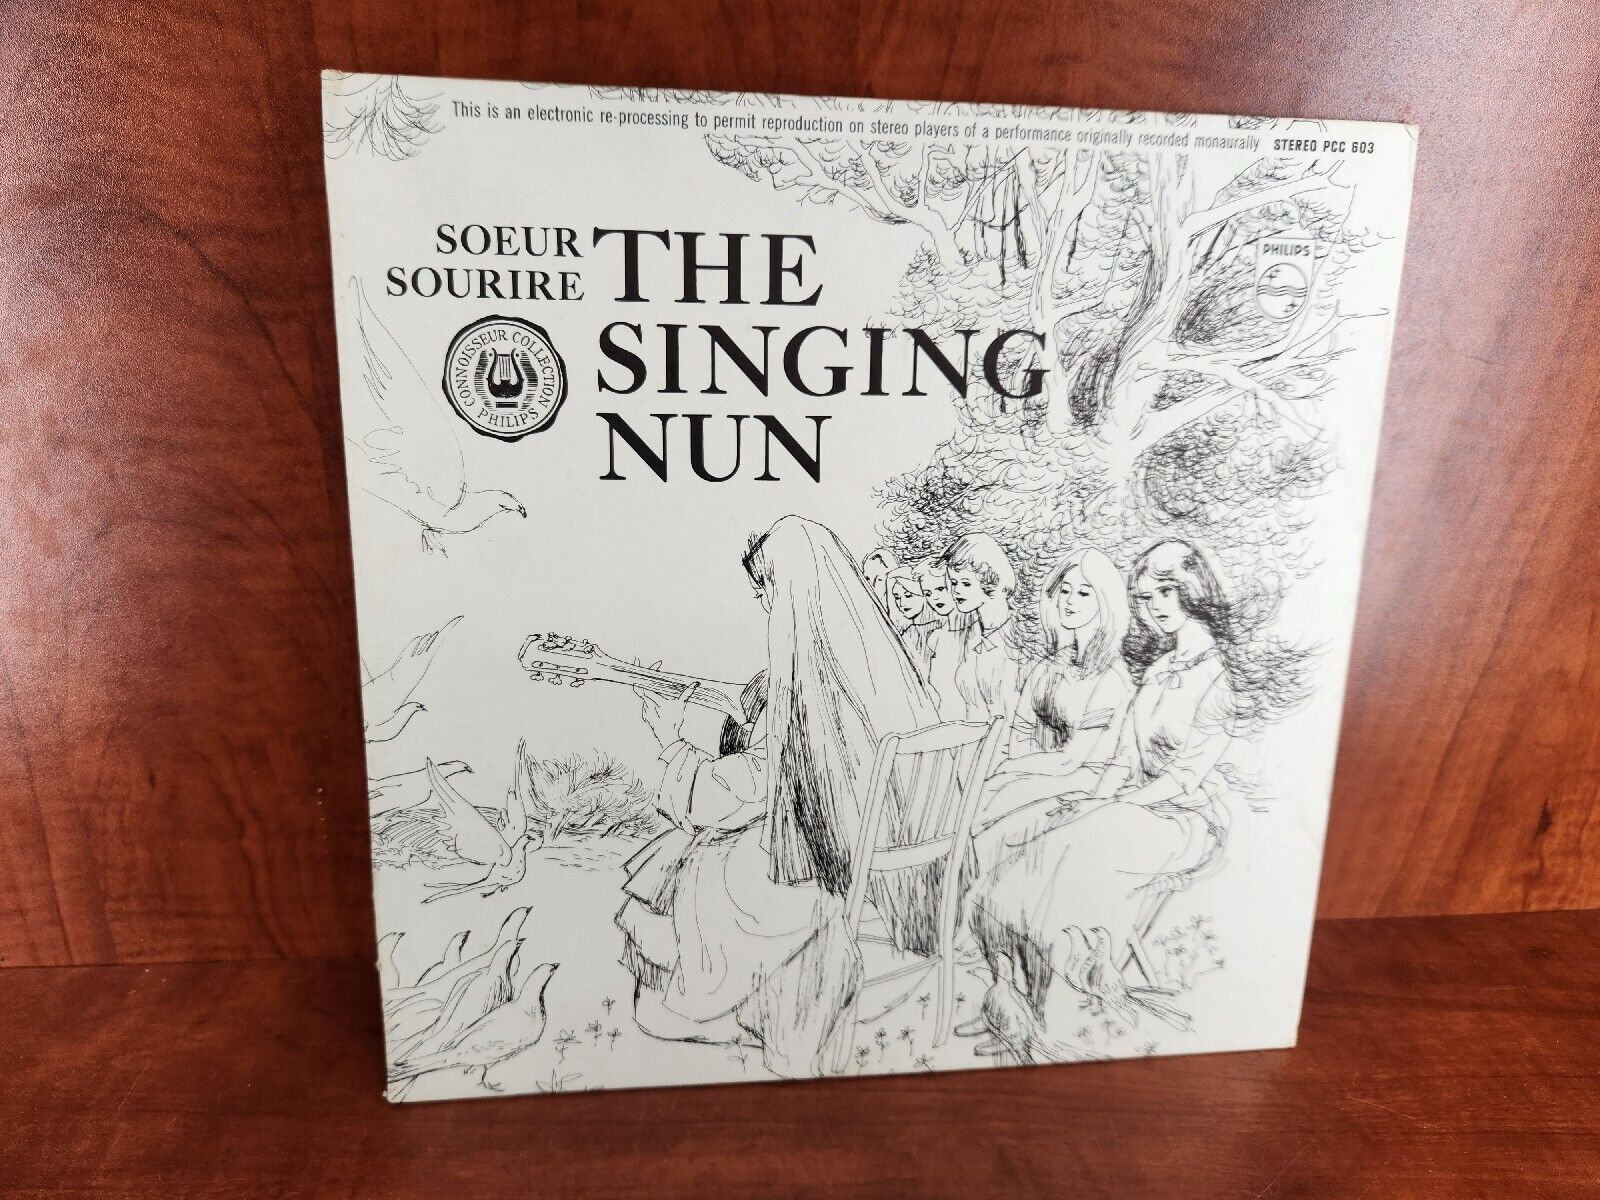 SOEUR SOURIRE - THE SINGING NUN - PHILIPS ORIGINAL LP - RECORD ALBUM VINYL